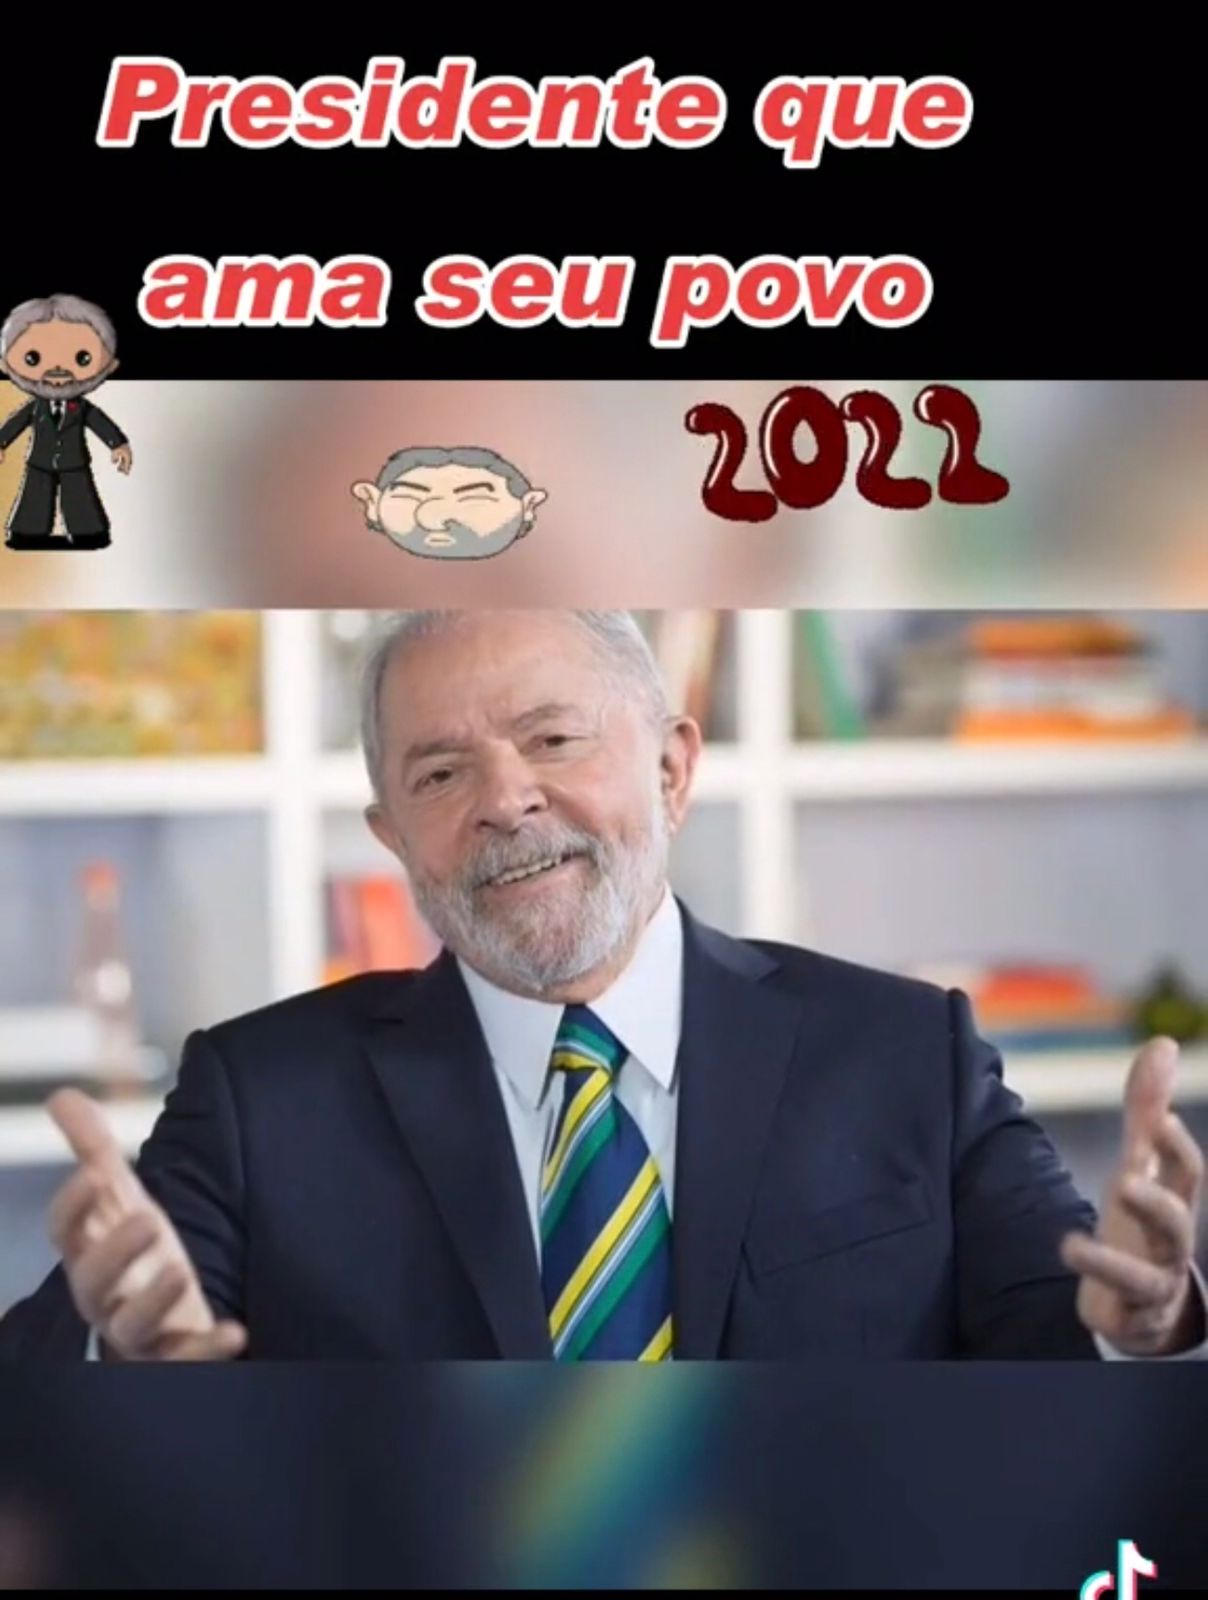 Tomaz, Presidente Do PT De Teixeira De Freitas Foi Quem Me Enviou Este Vídeo Que Reproduzo Para Você!